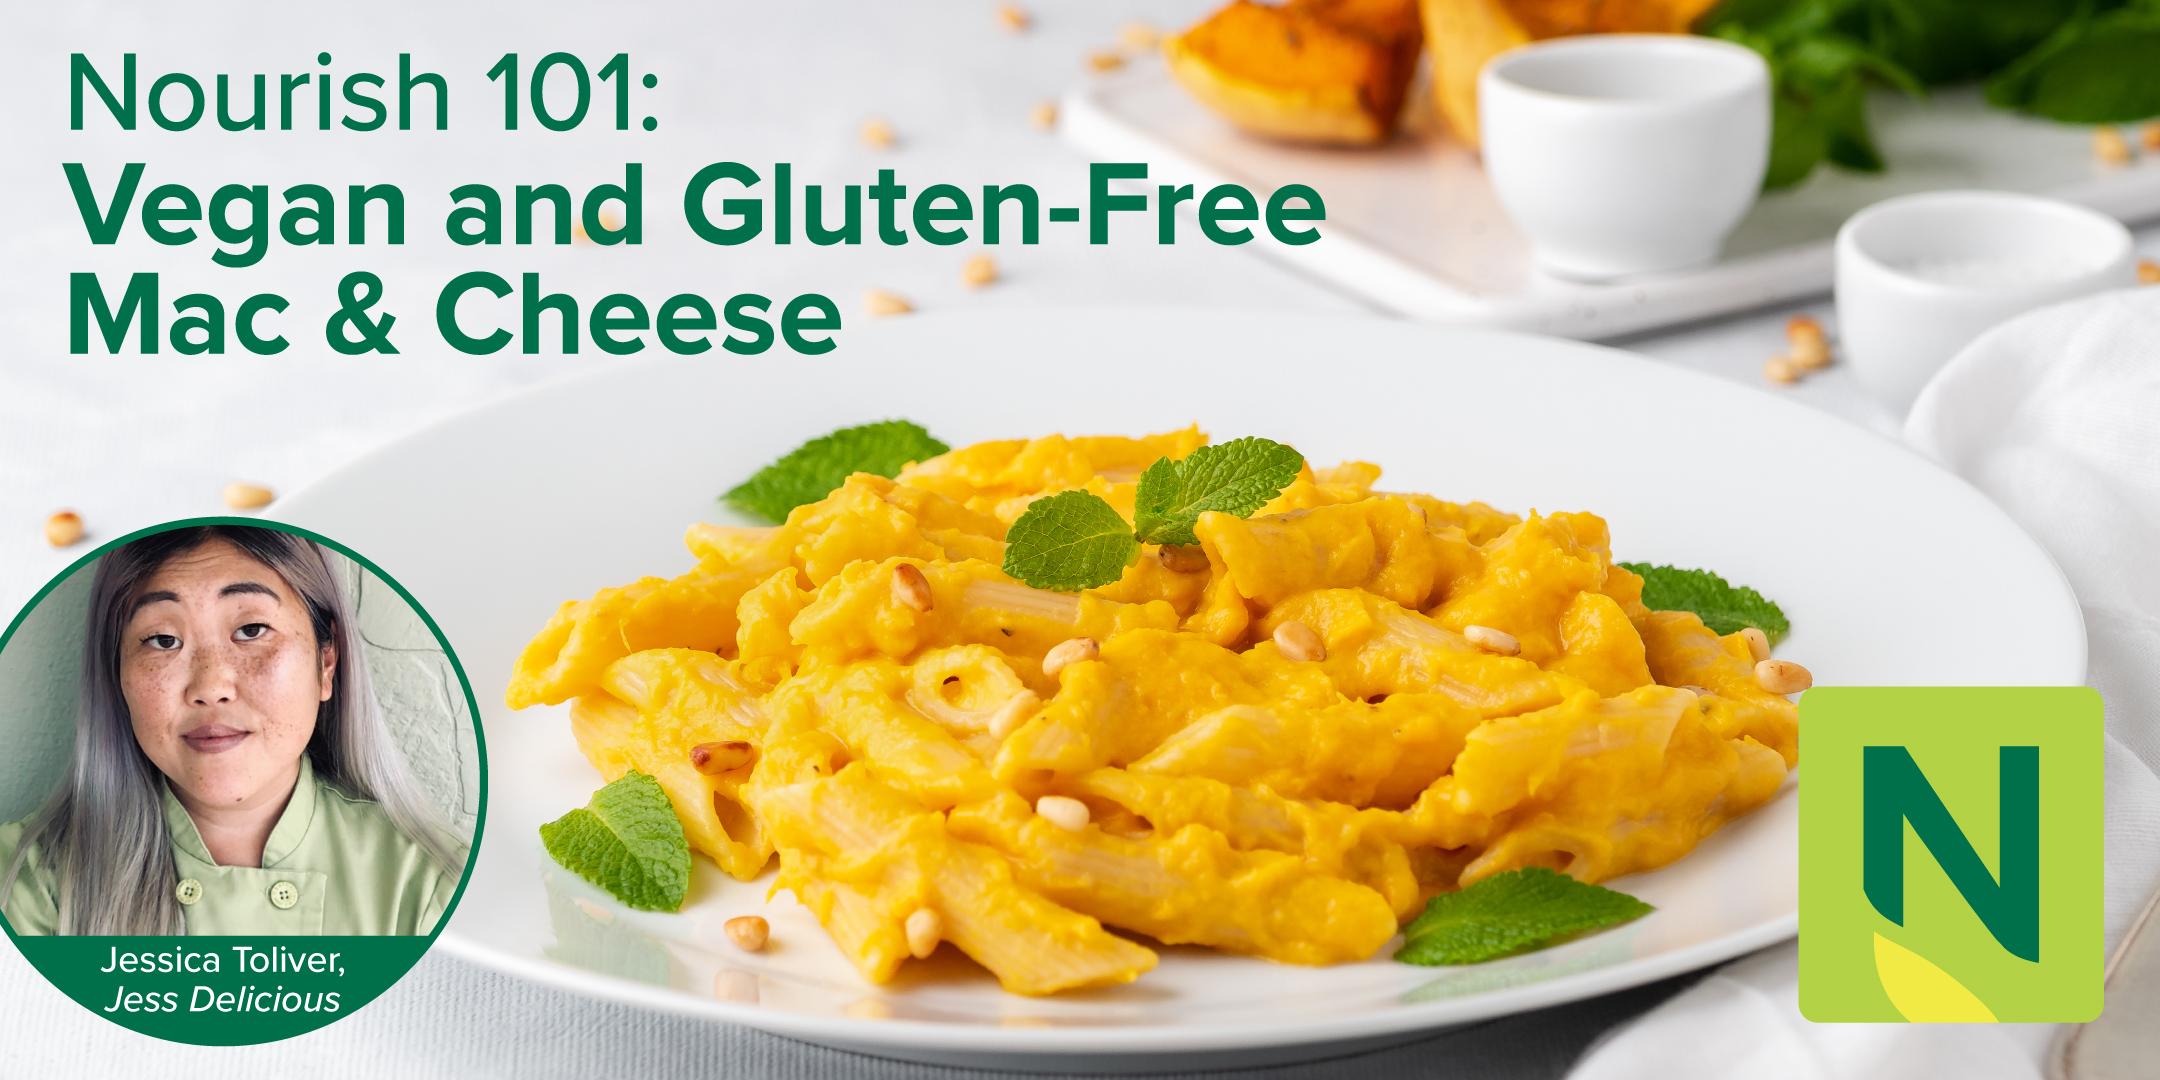 Nourish 101: Vegan and Gluten-Free Mac & Cheese